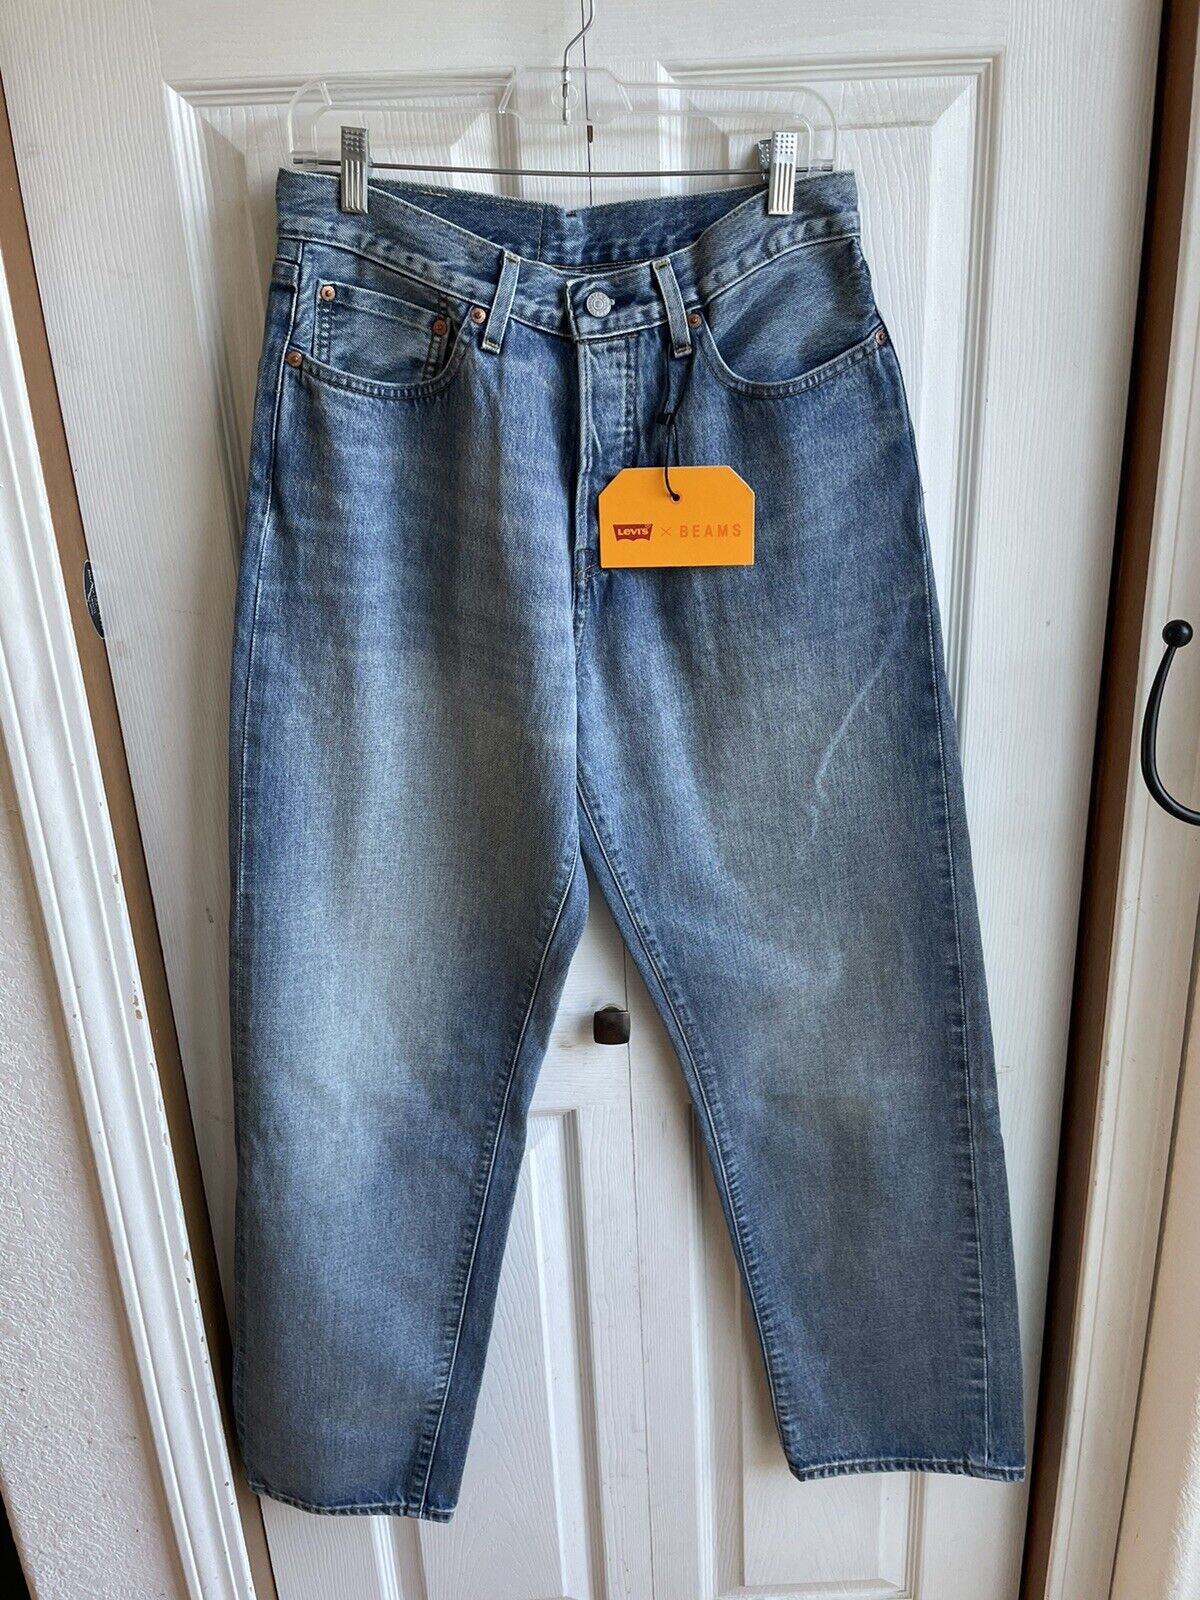 NWT Levi’s Beams Japan Super Wide Blue Denim Jeans Selvedge RARE Size 30 x  32